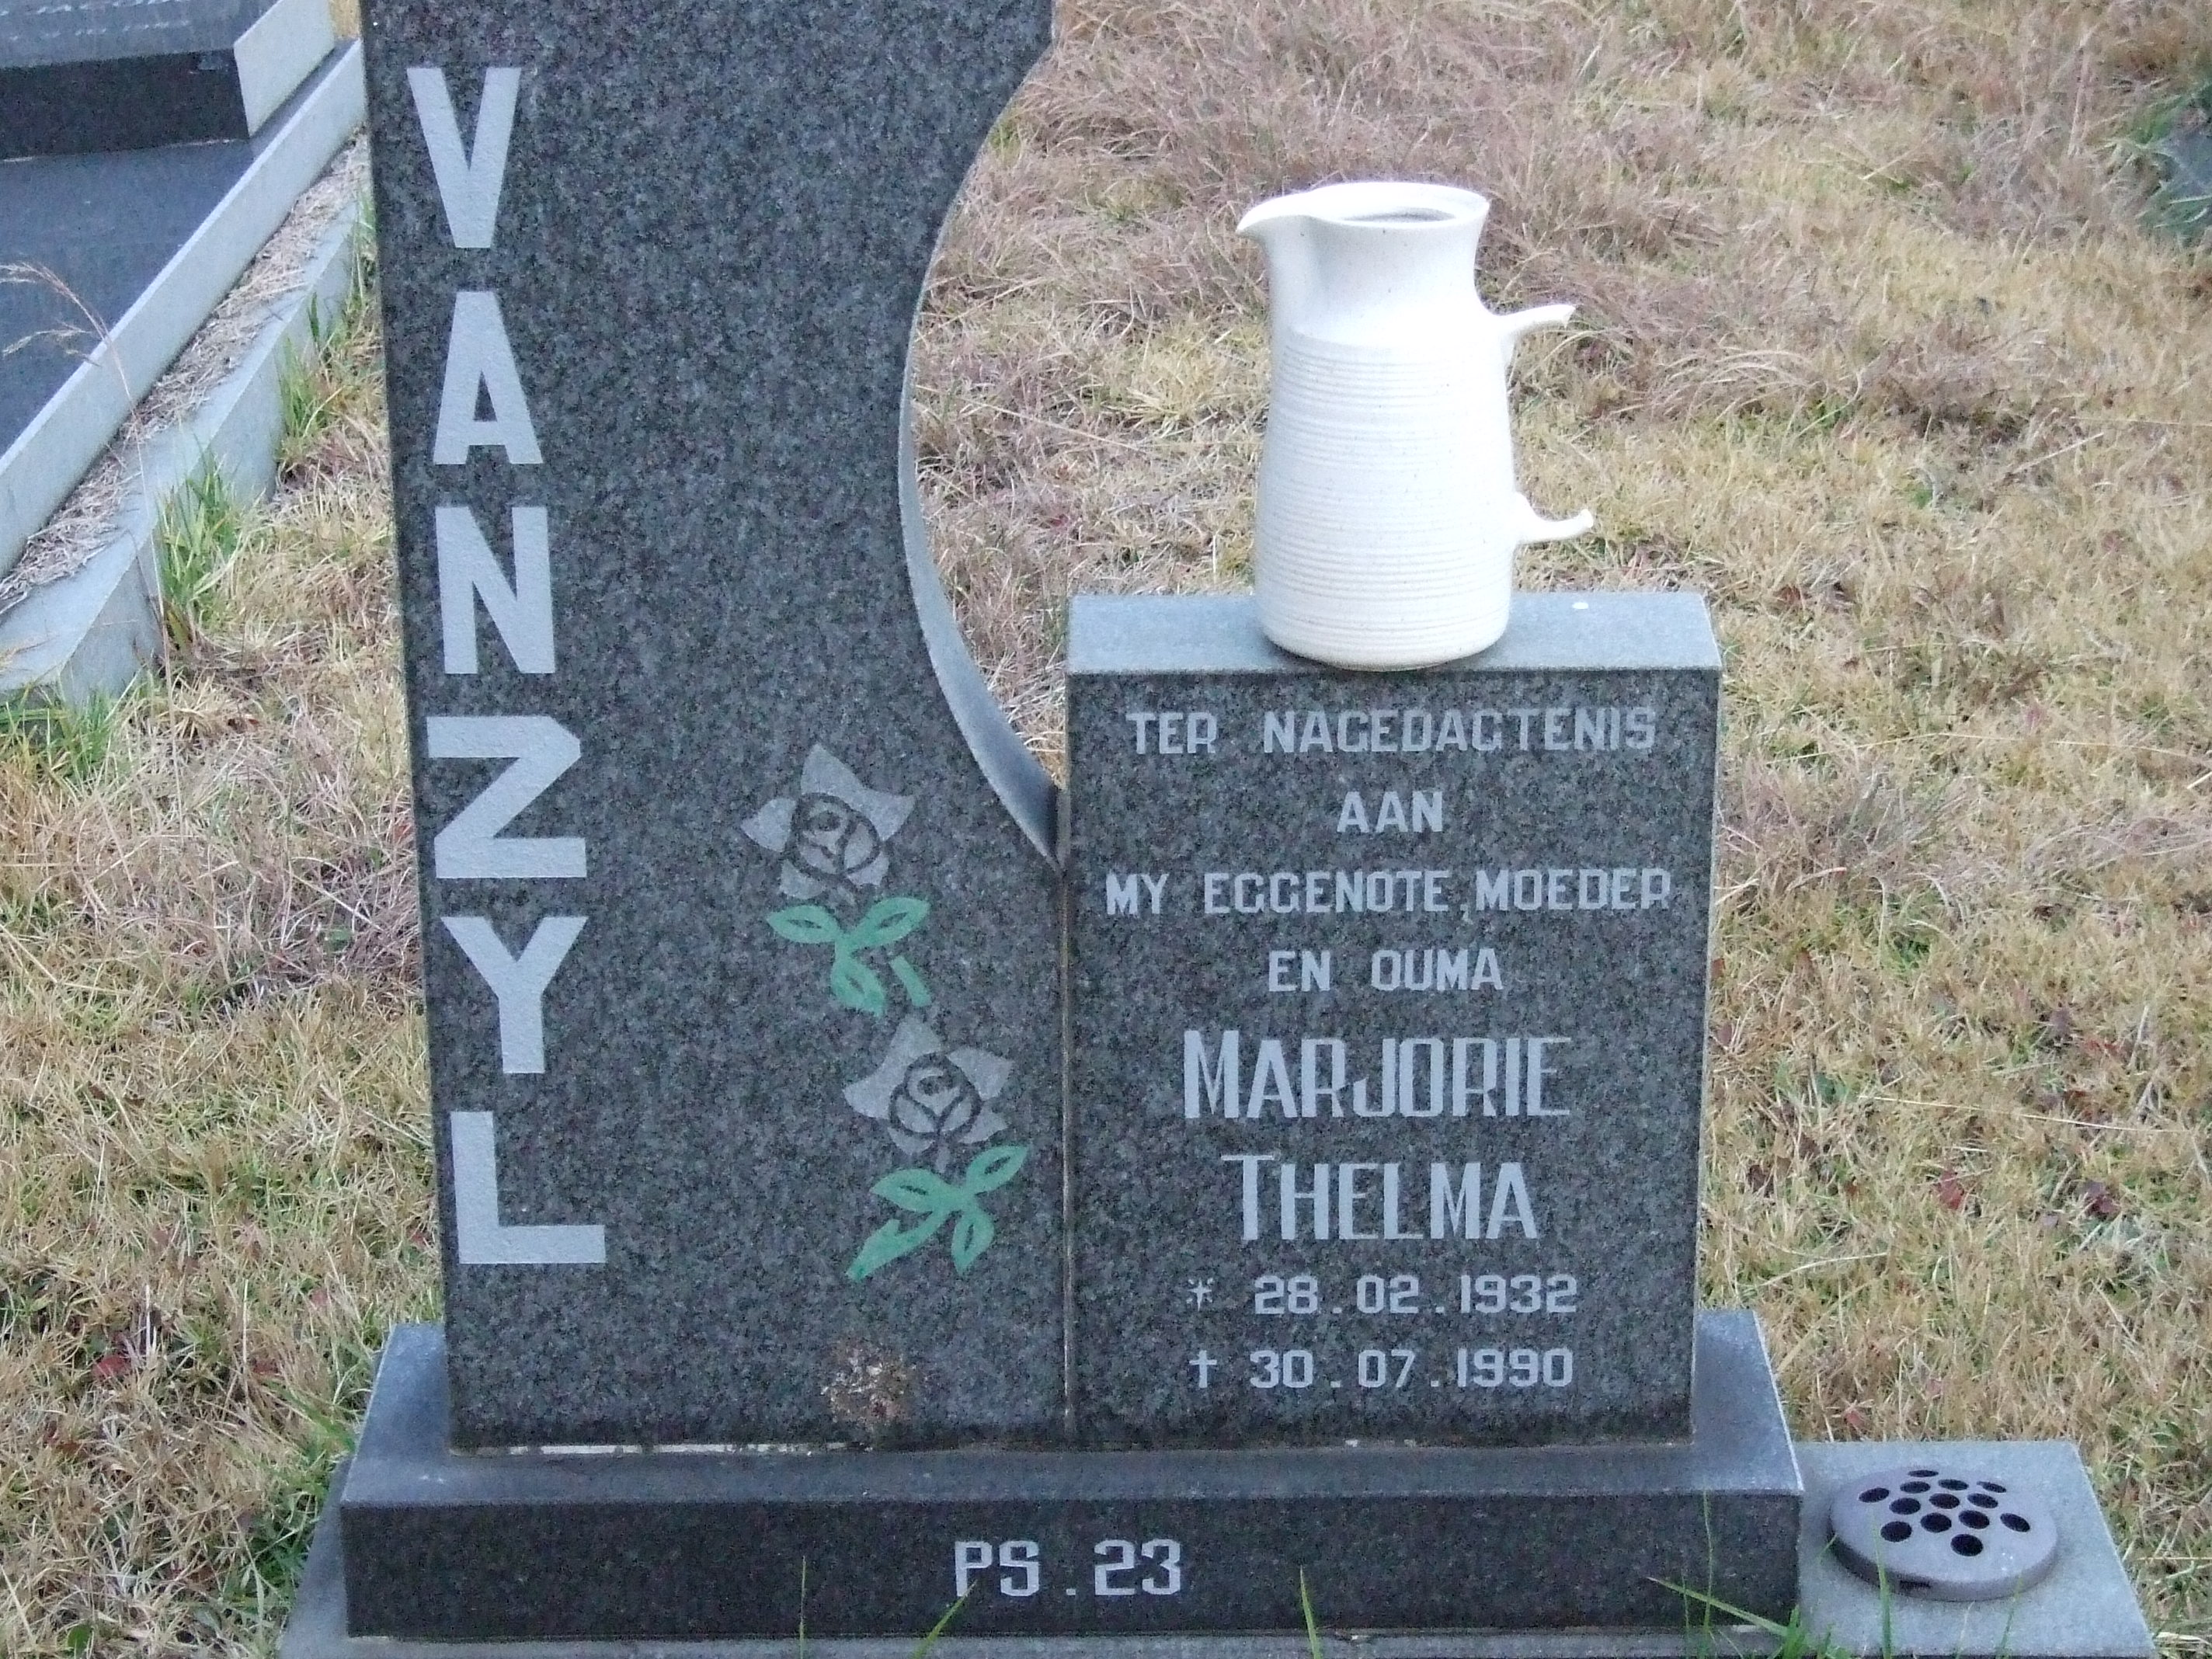 ZYL Marjorie Thelma, van 1932-1990